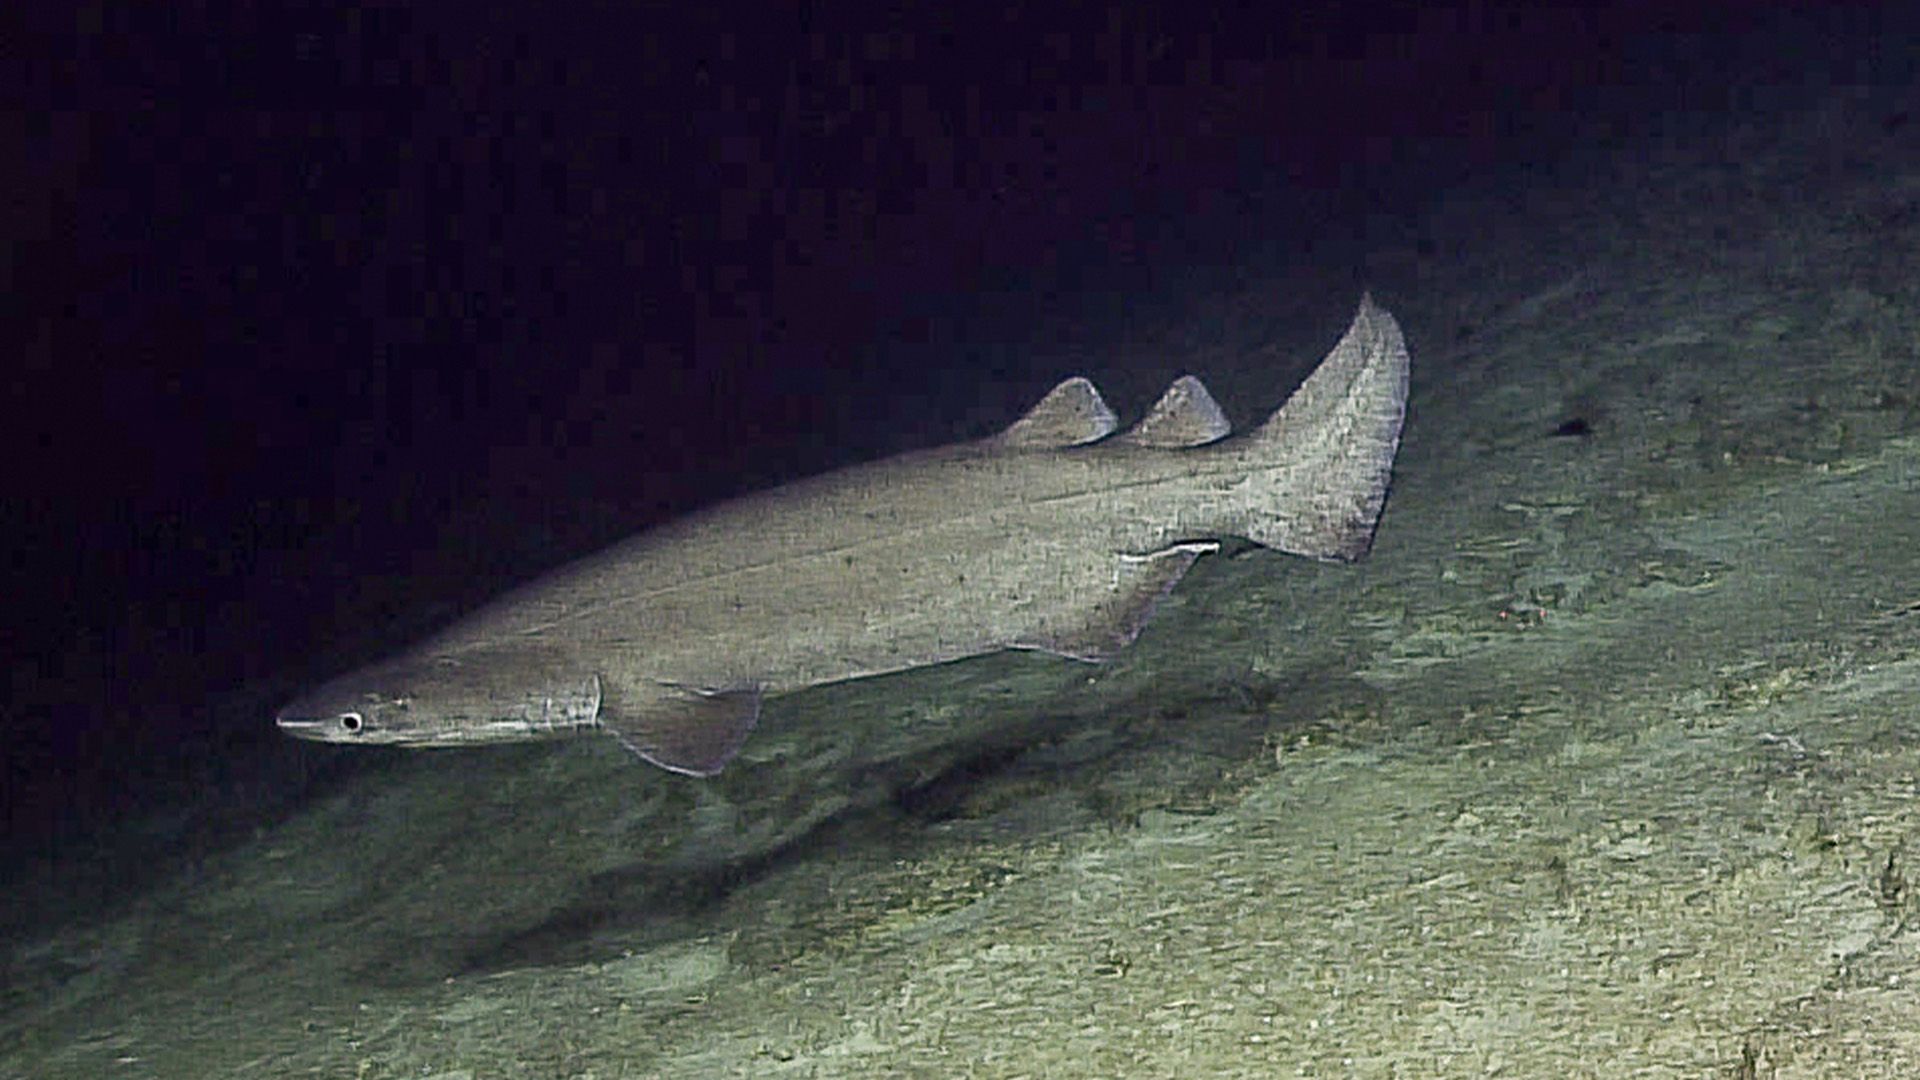 Prickly shark, Echinorhinus cookei.